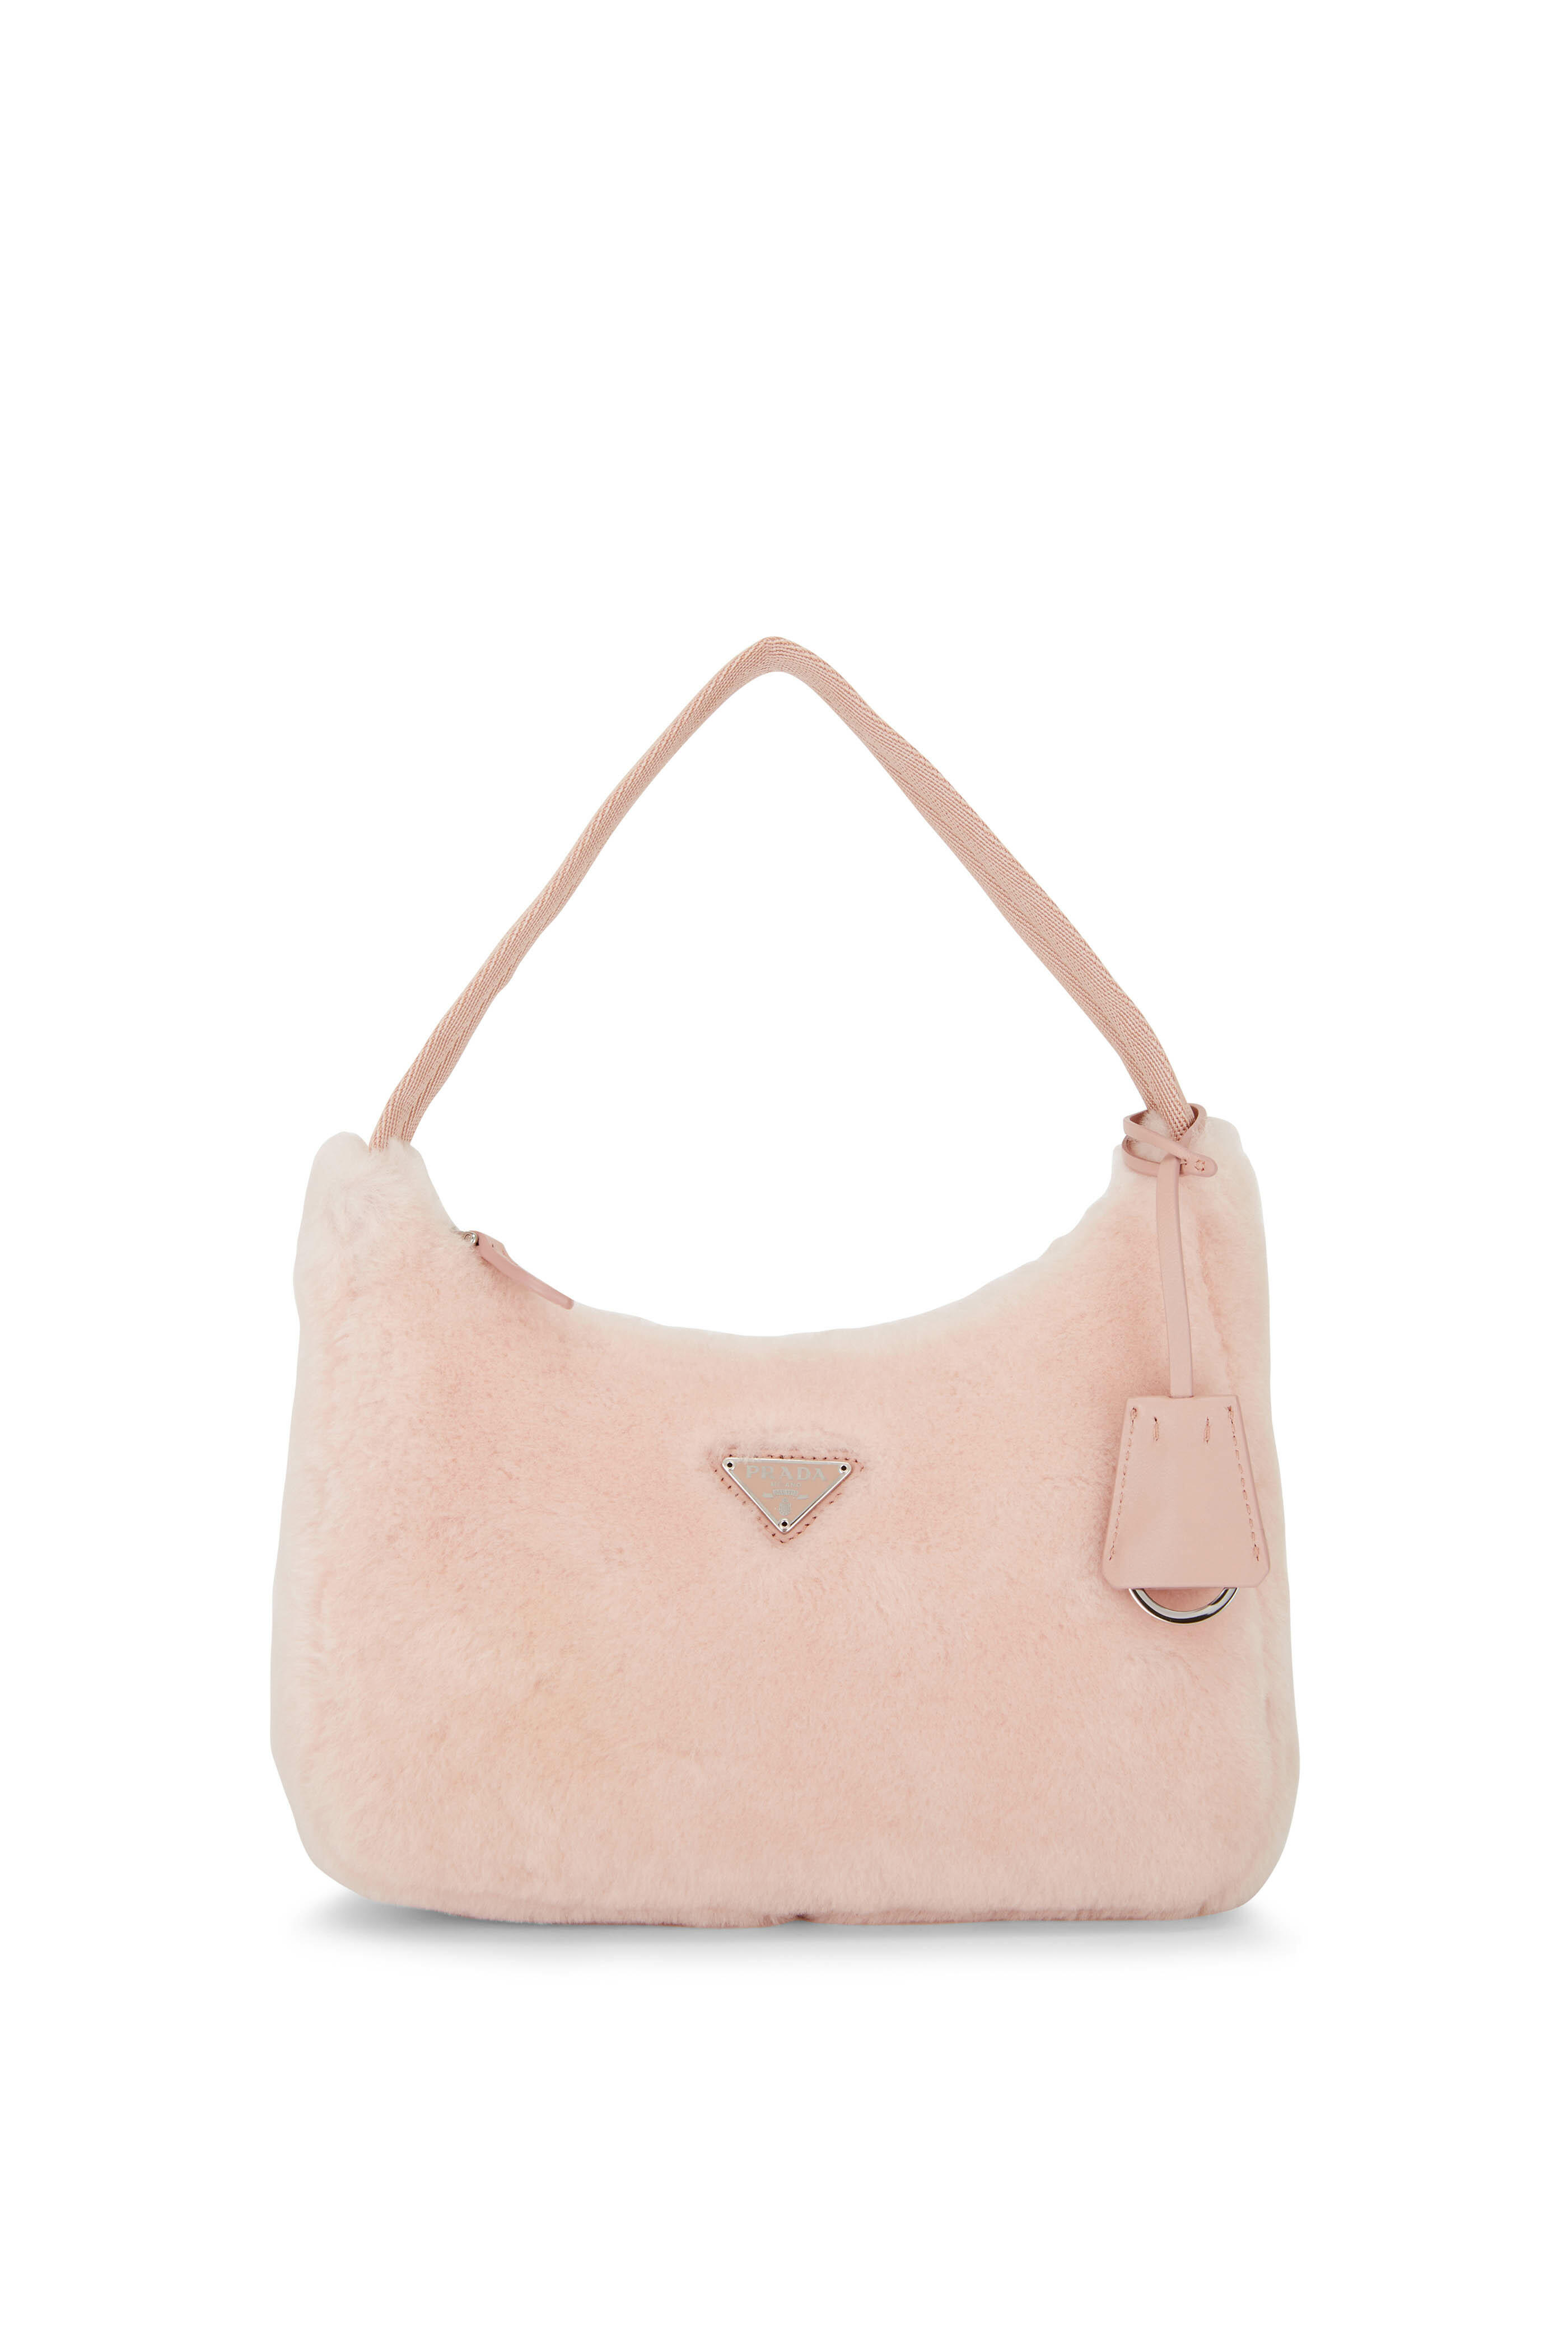 Shearling Shoulder Bag in Pink - Prada